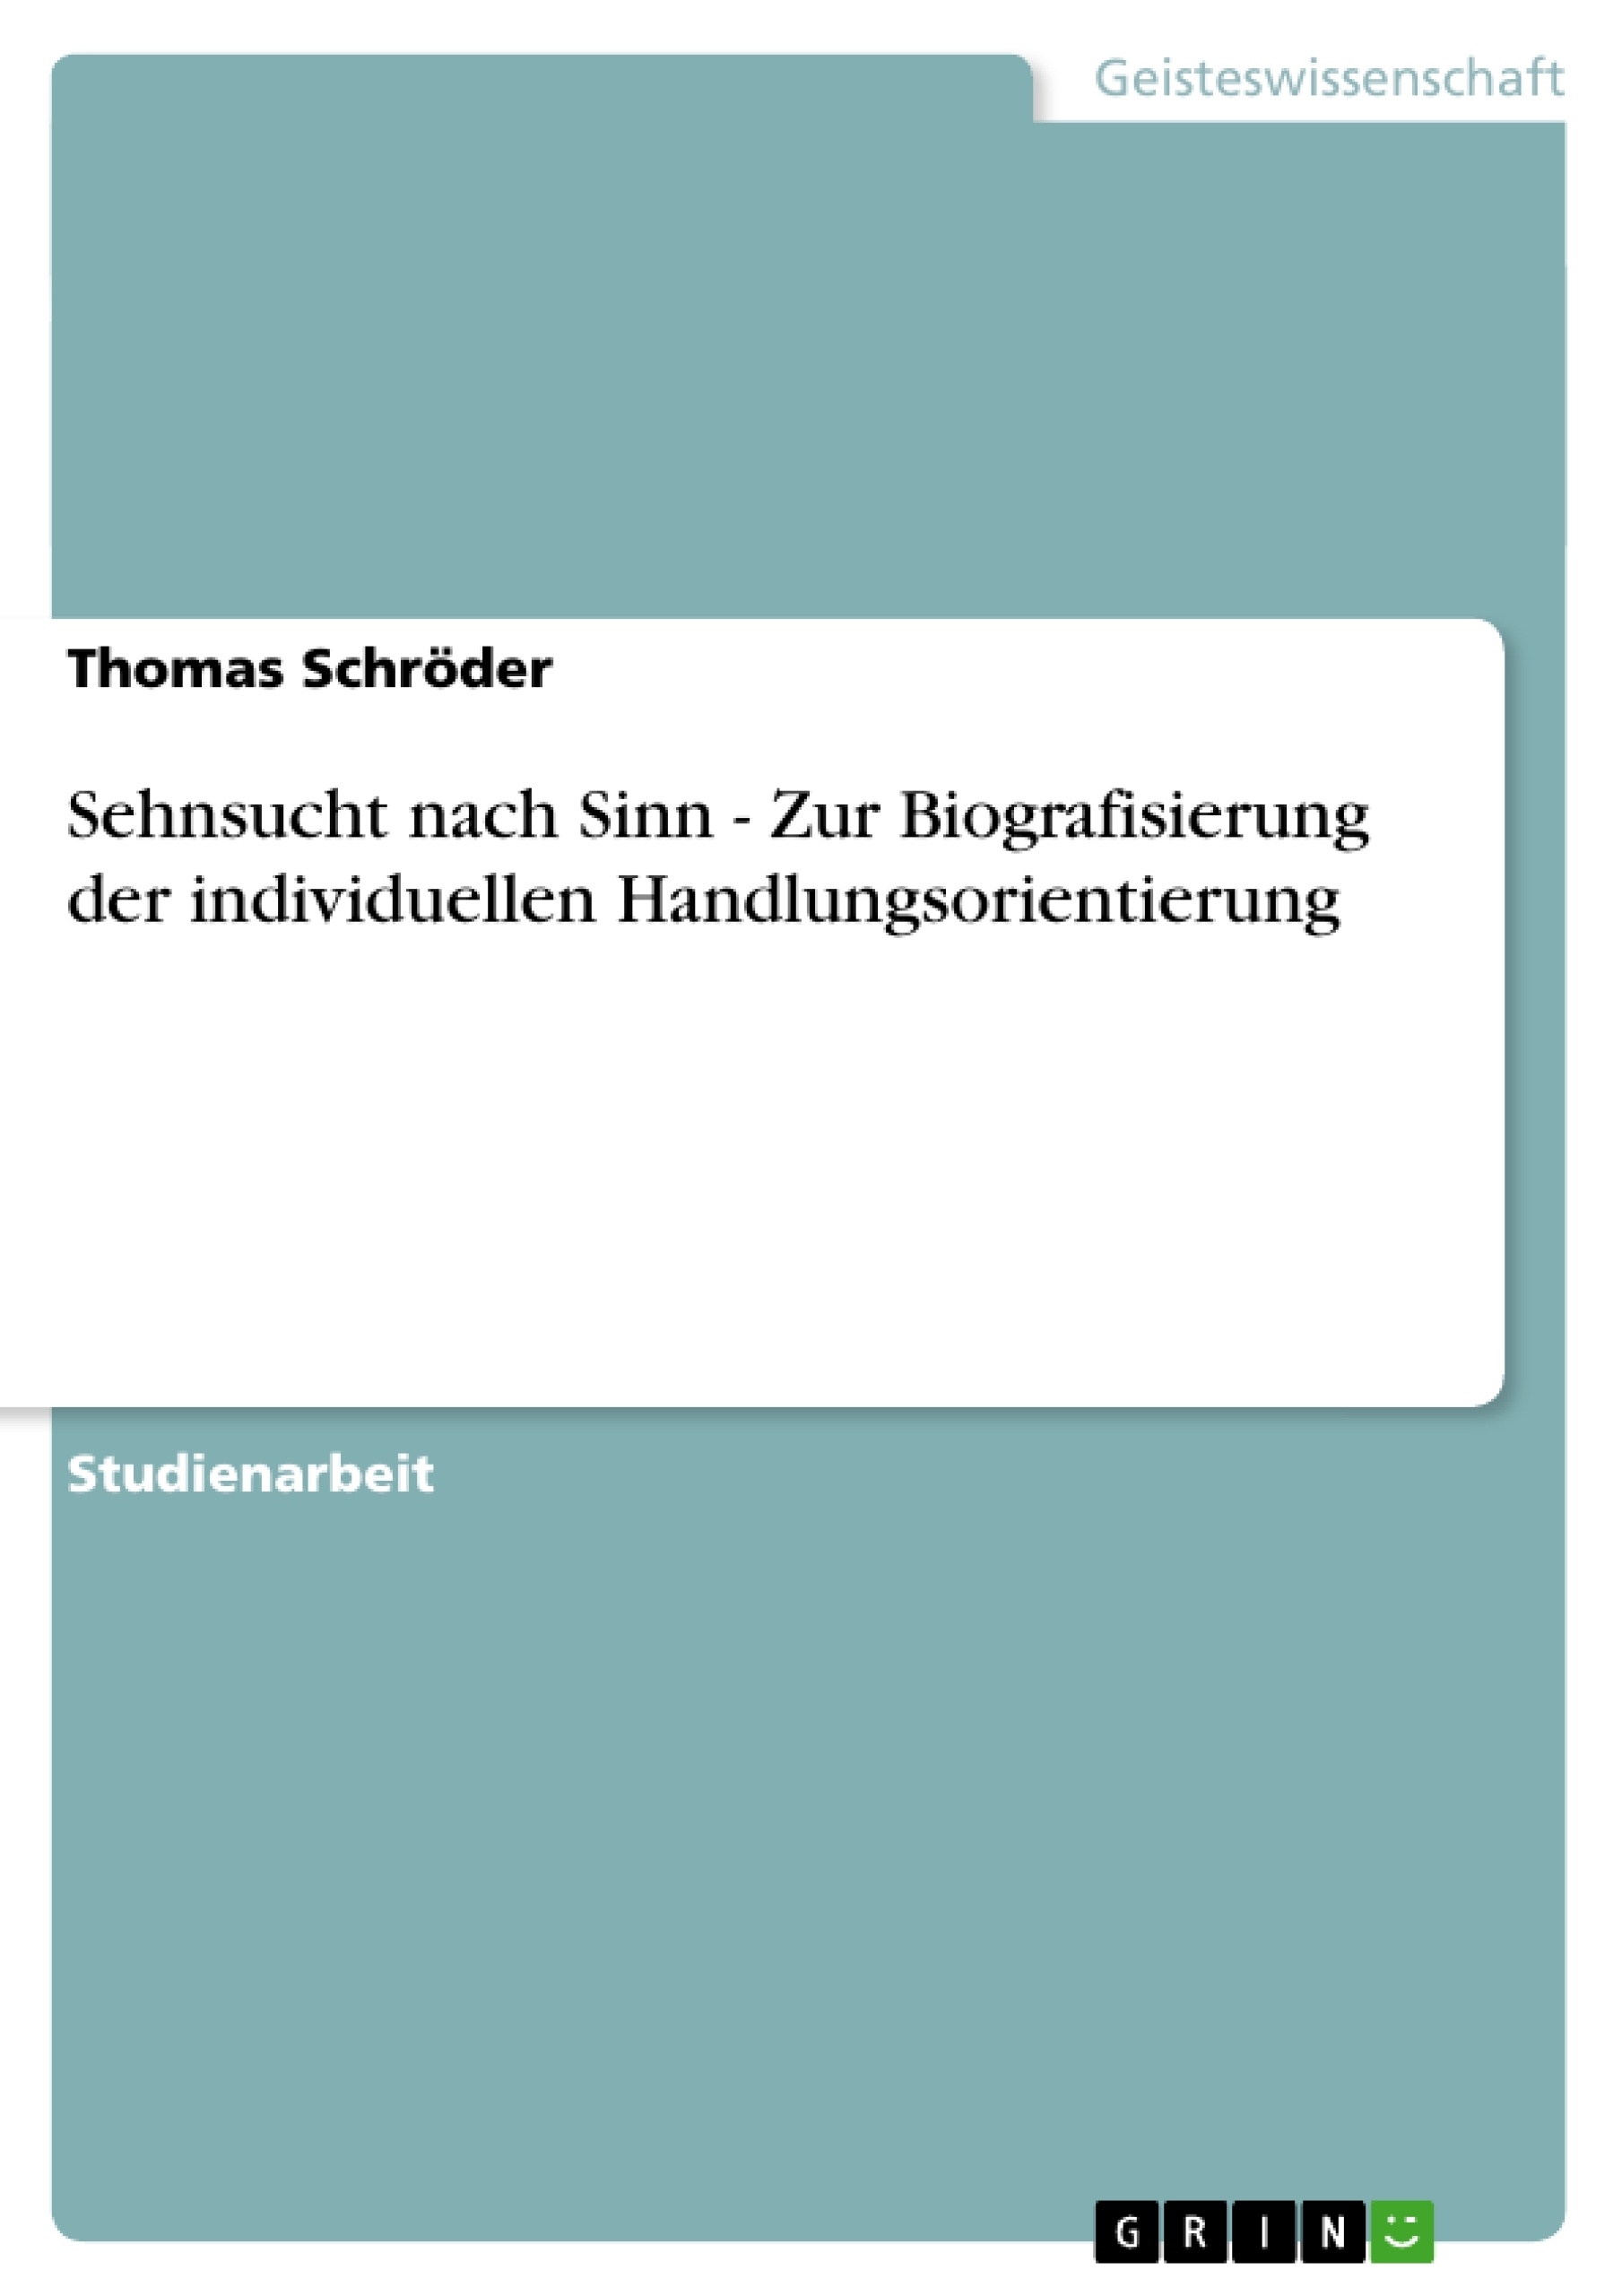 Titre: Sehnsucht nach Sinn - Zur Biografisierung der individuellen Handlungsorientierung